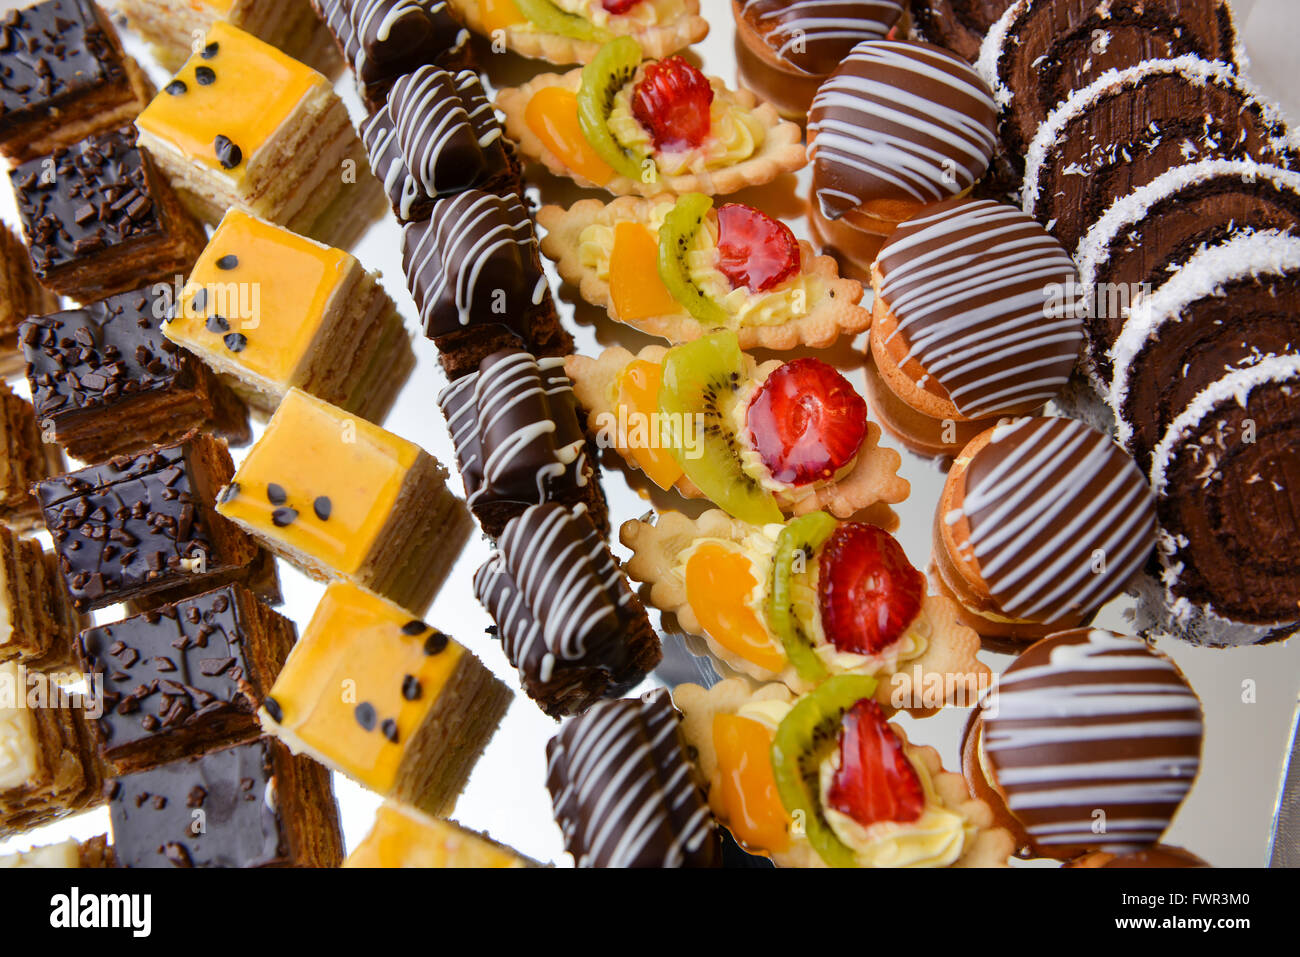 Différents types de gâteaux au chocolat, vanille et fruits Banque D'Images